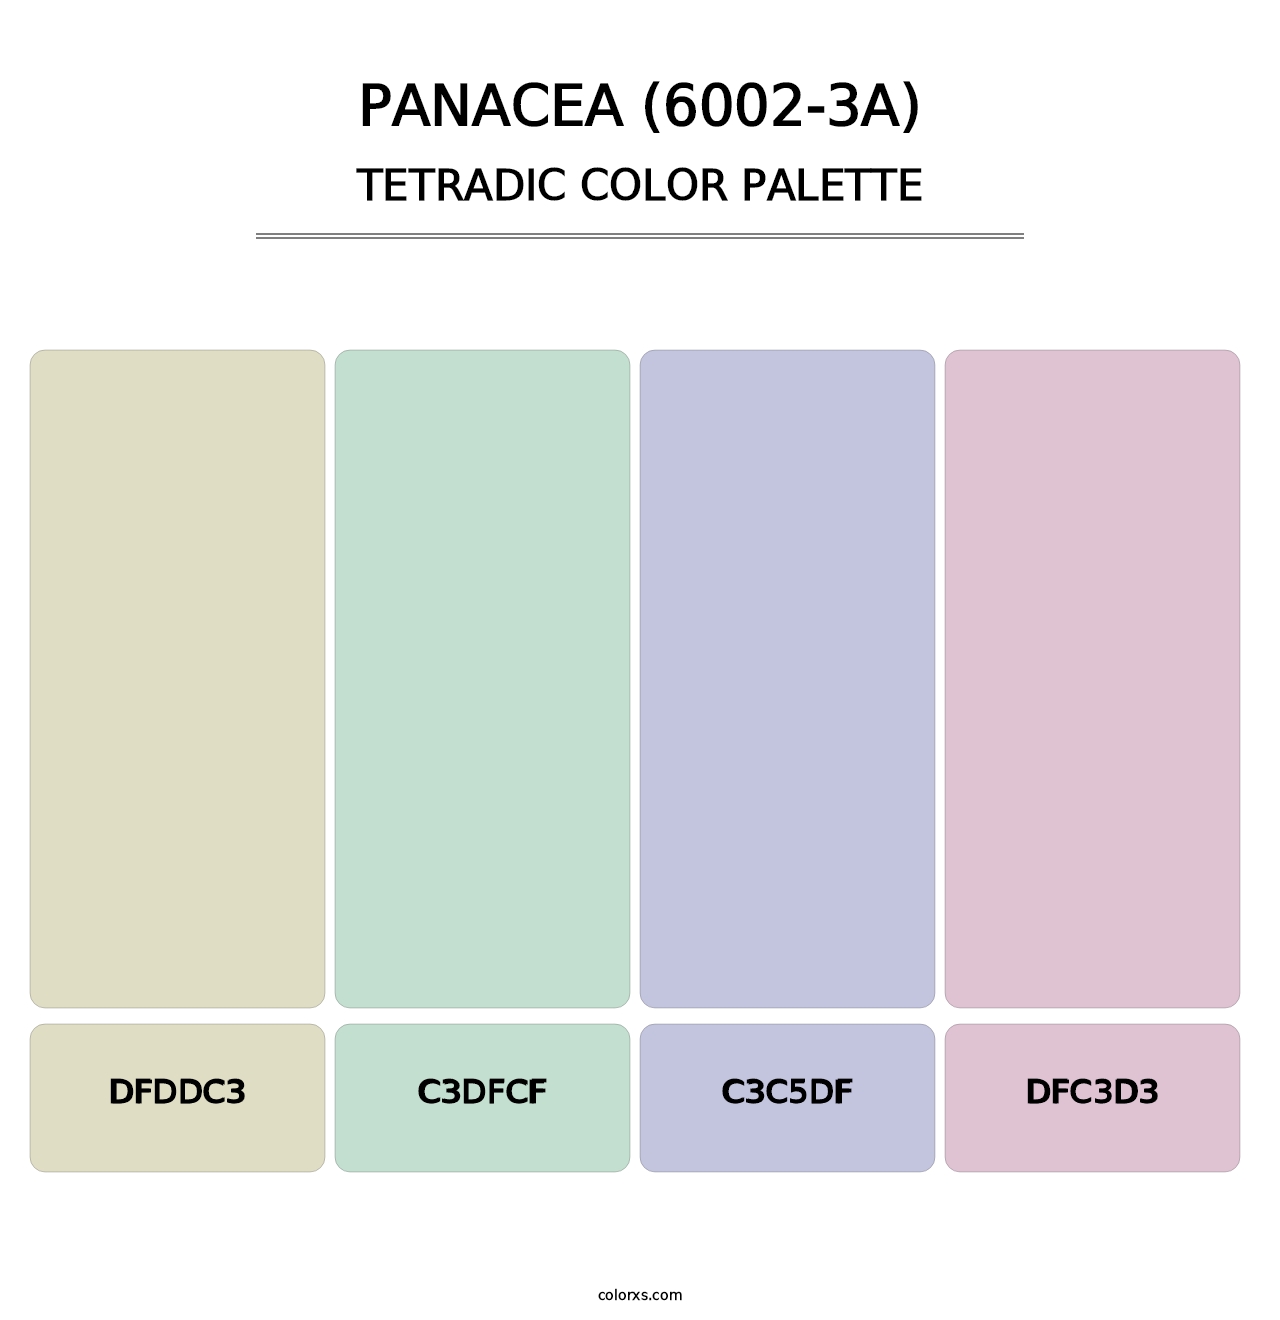 Panacea (6002-3A) - Tetradic Color Palette